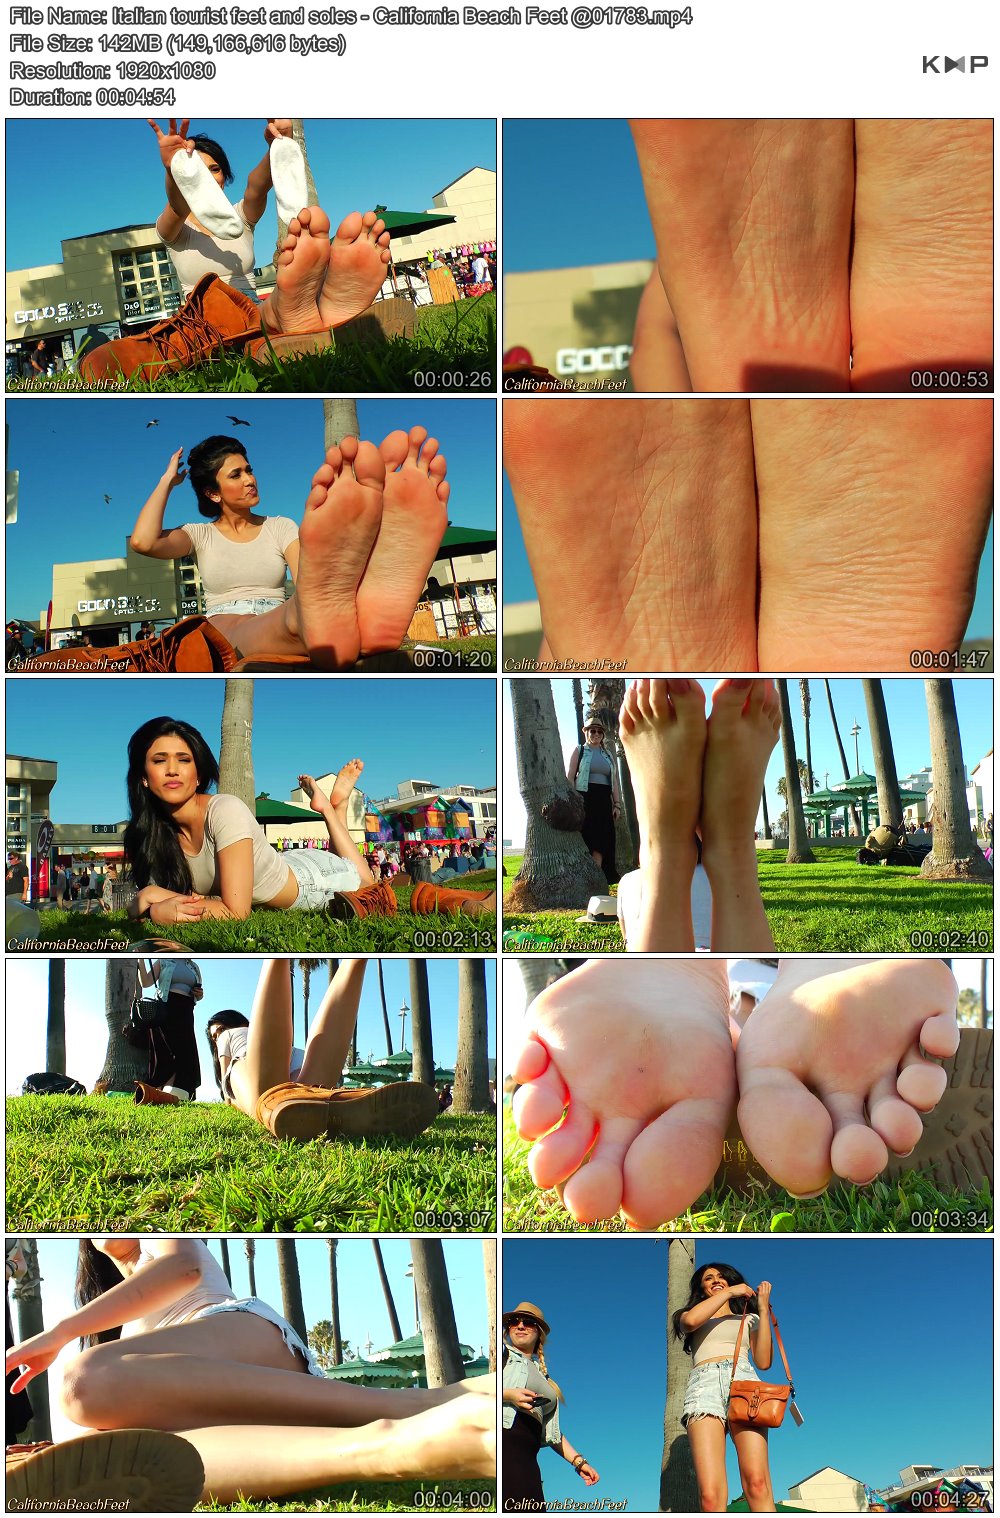 Italian tourist feet and soles - California Beach Feet @01783.JPG